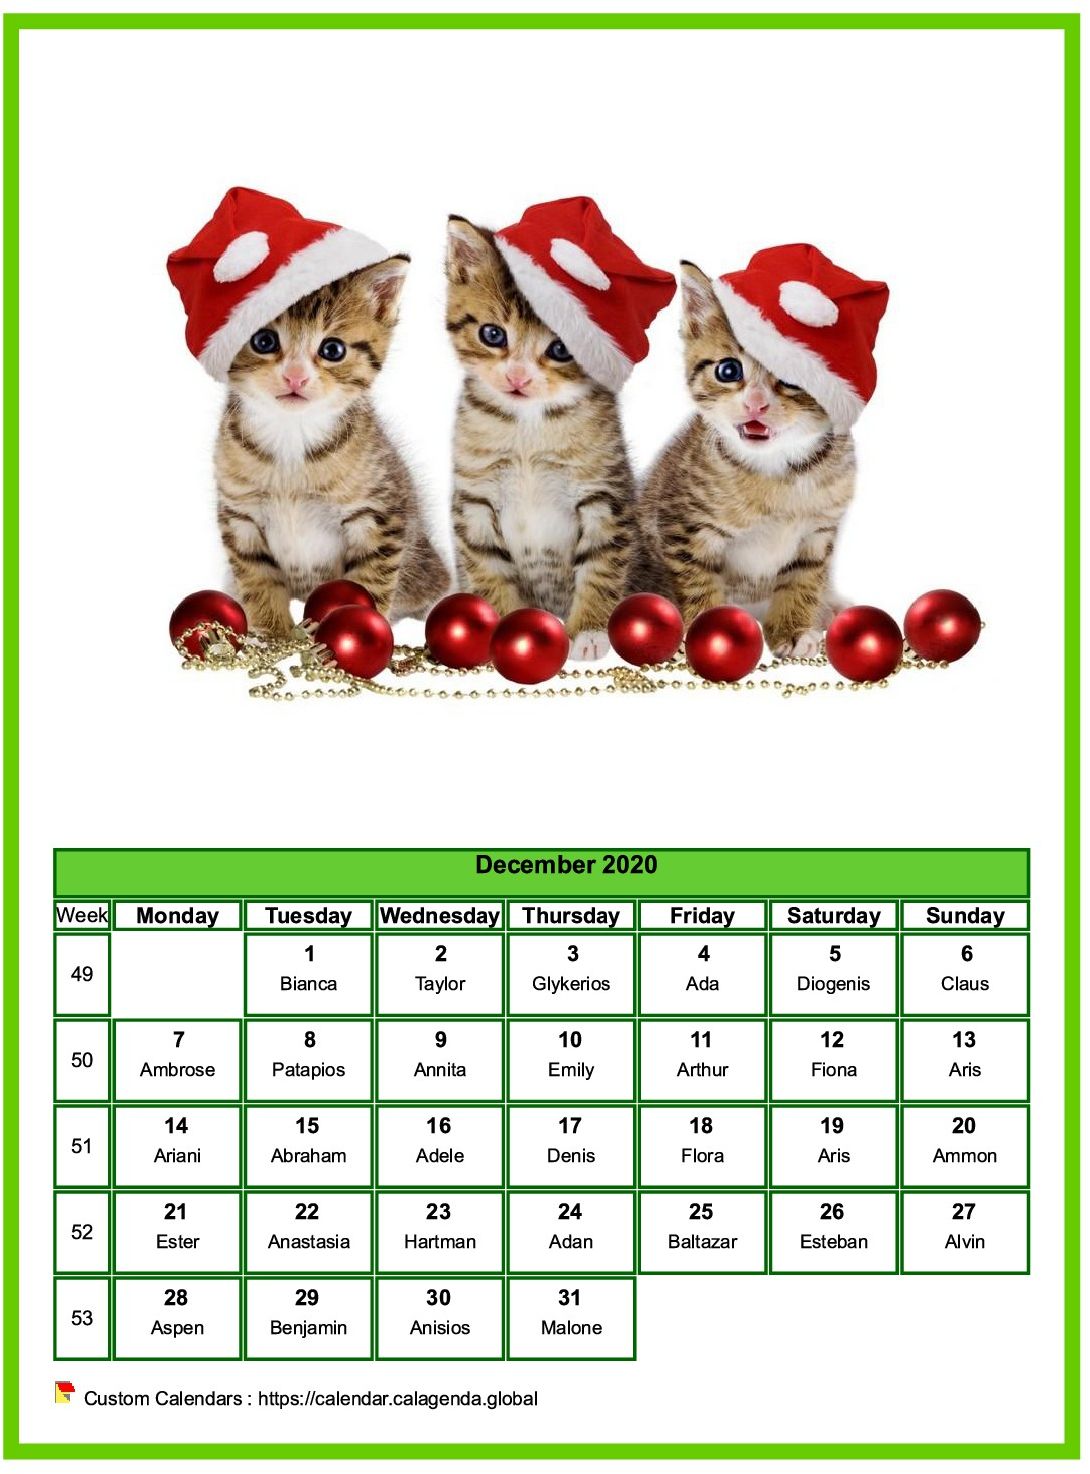 Calendar December 2020 cats